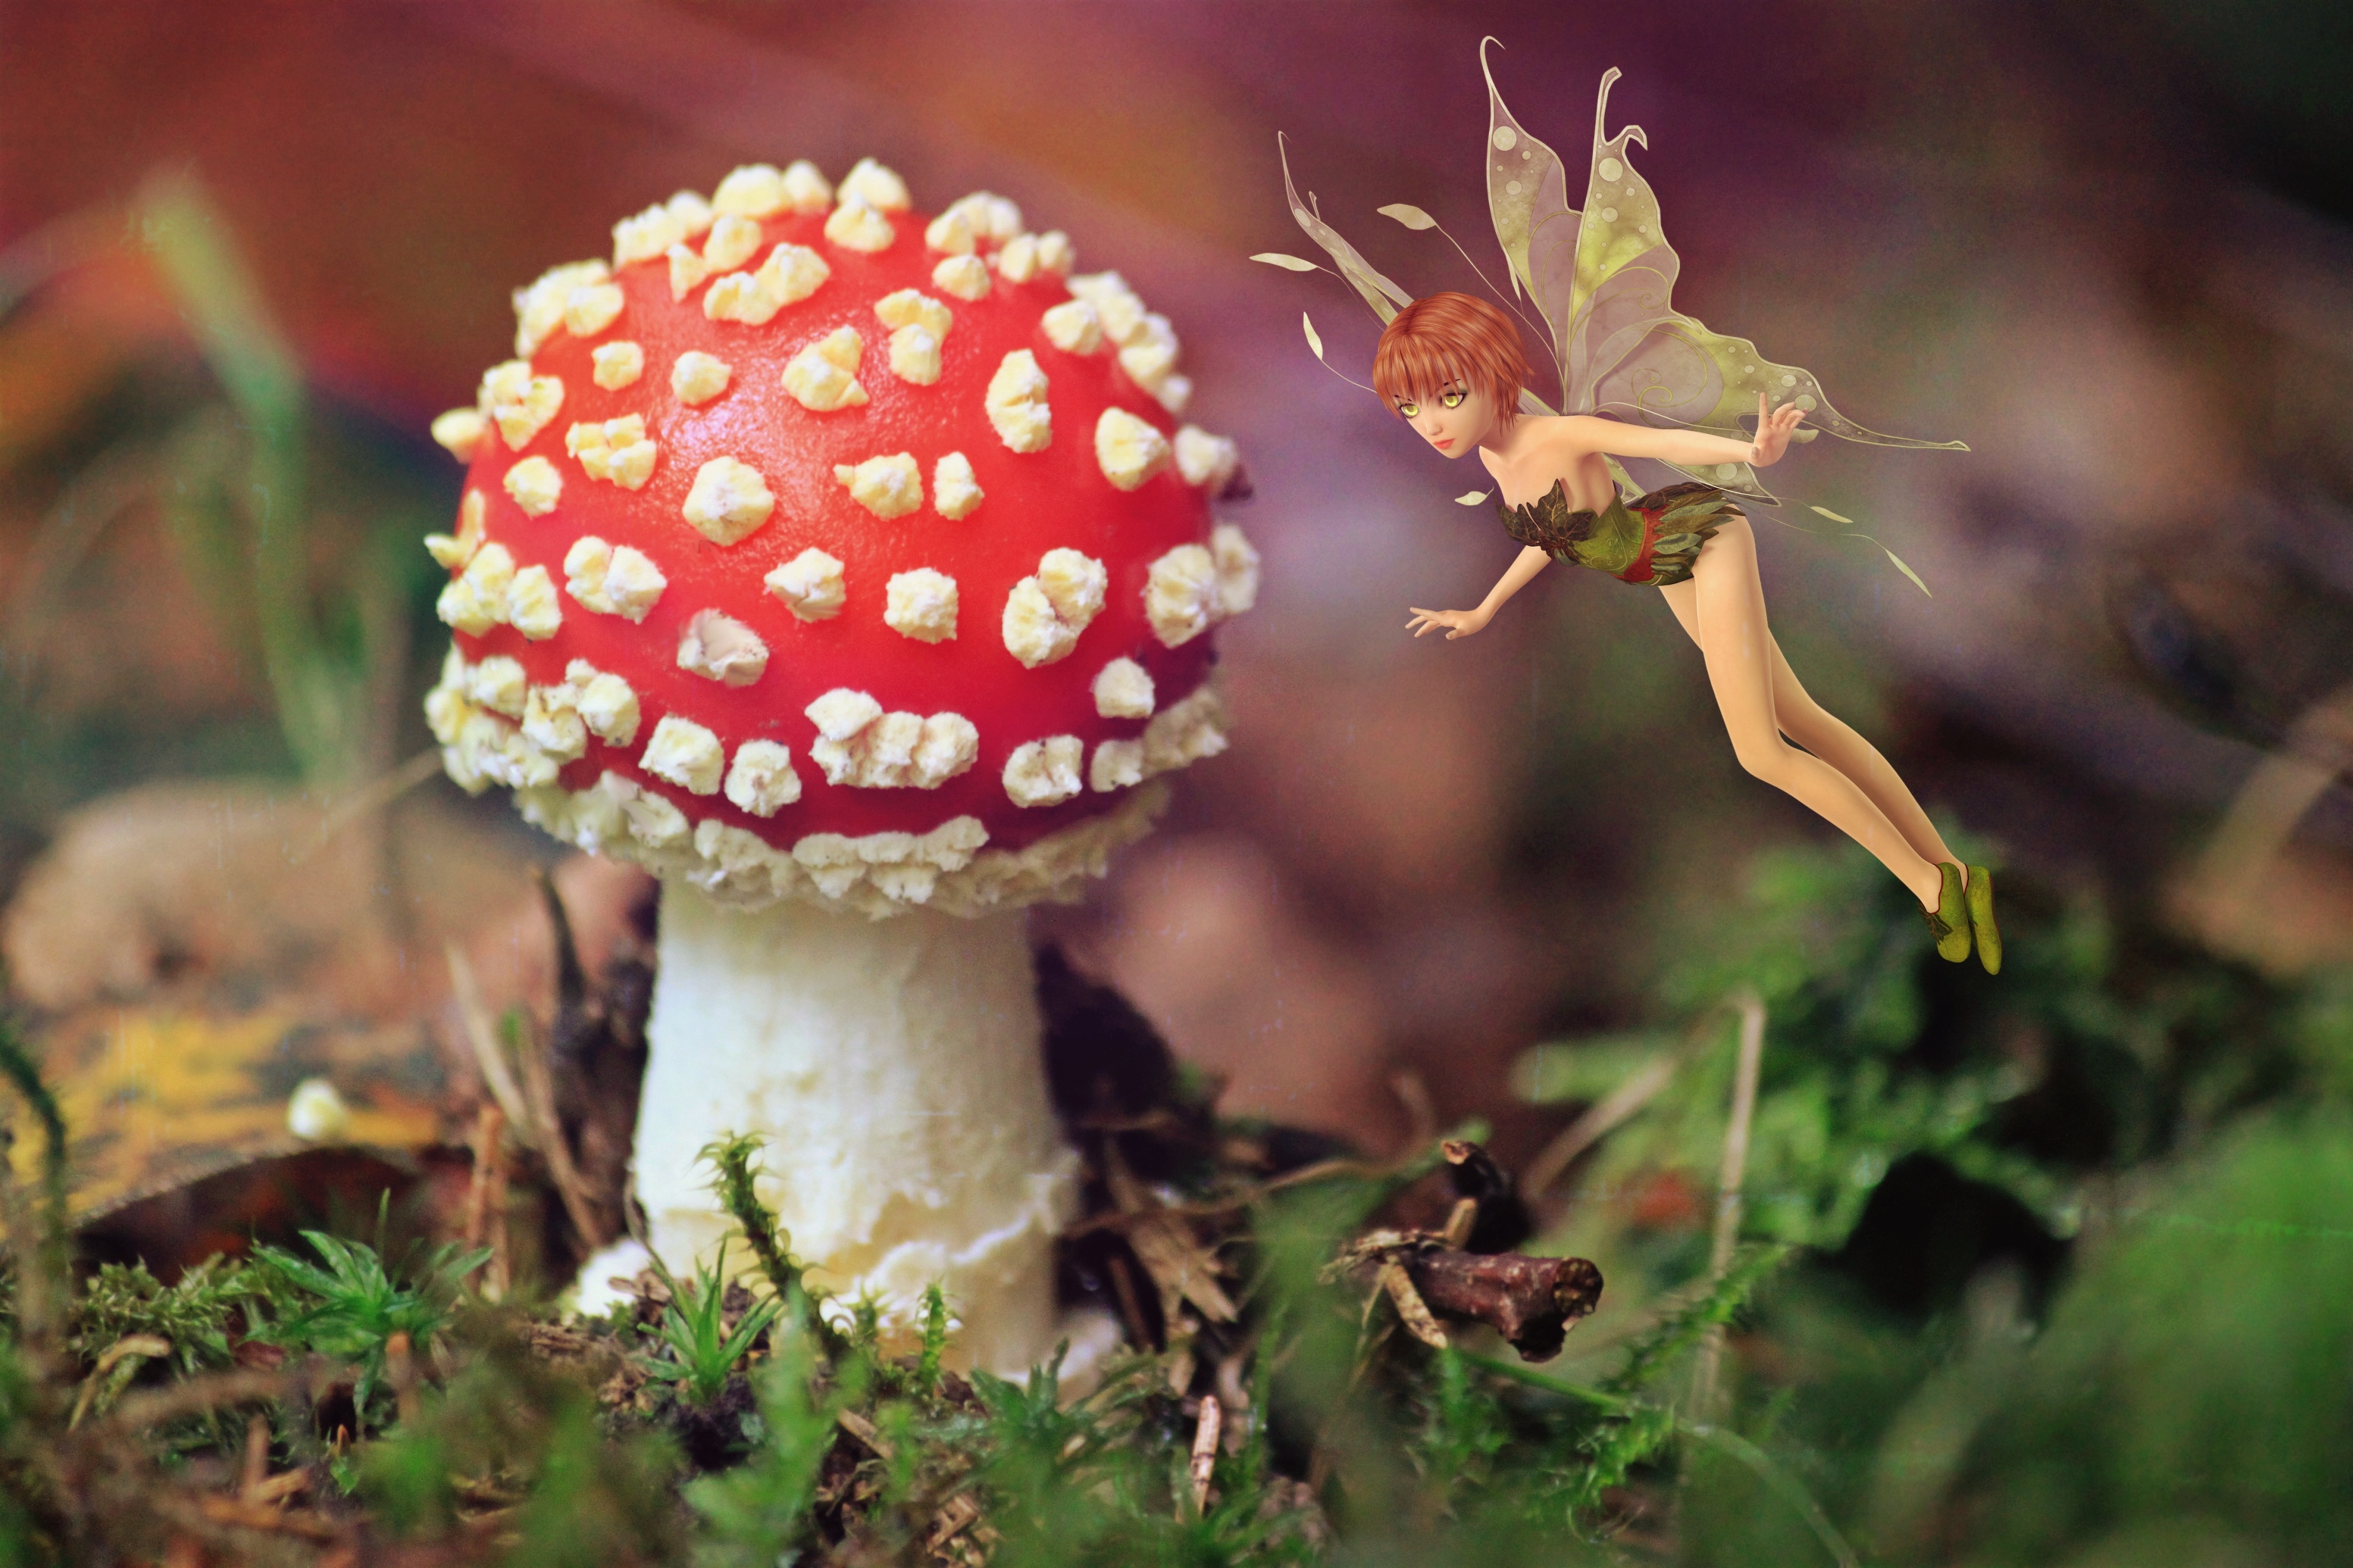 Free photo: Fairy and the Mushroom, Mushroom, Nature